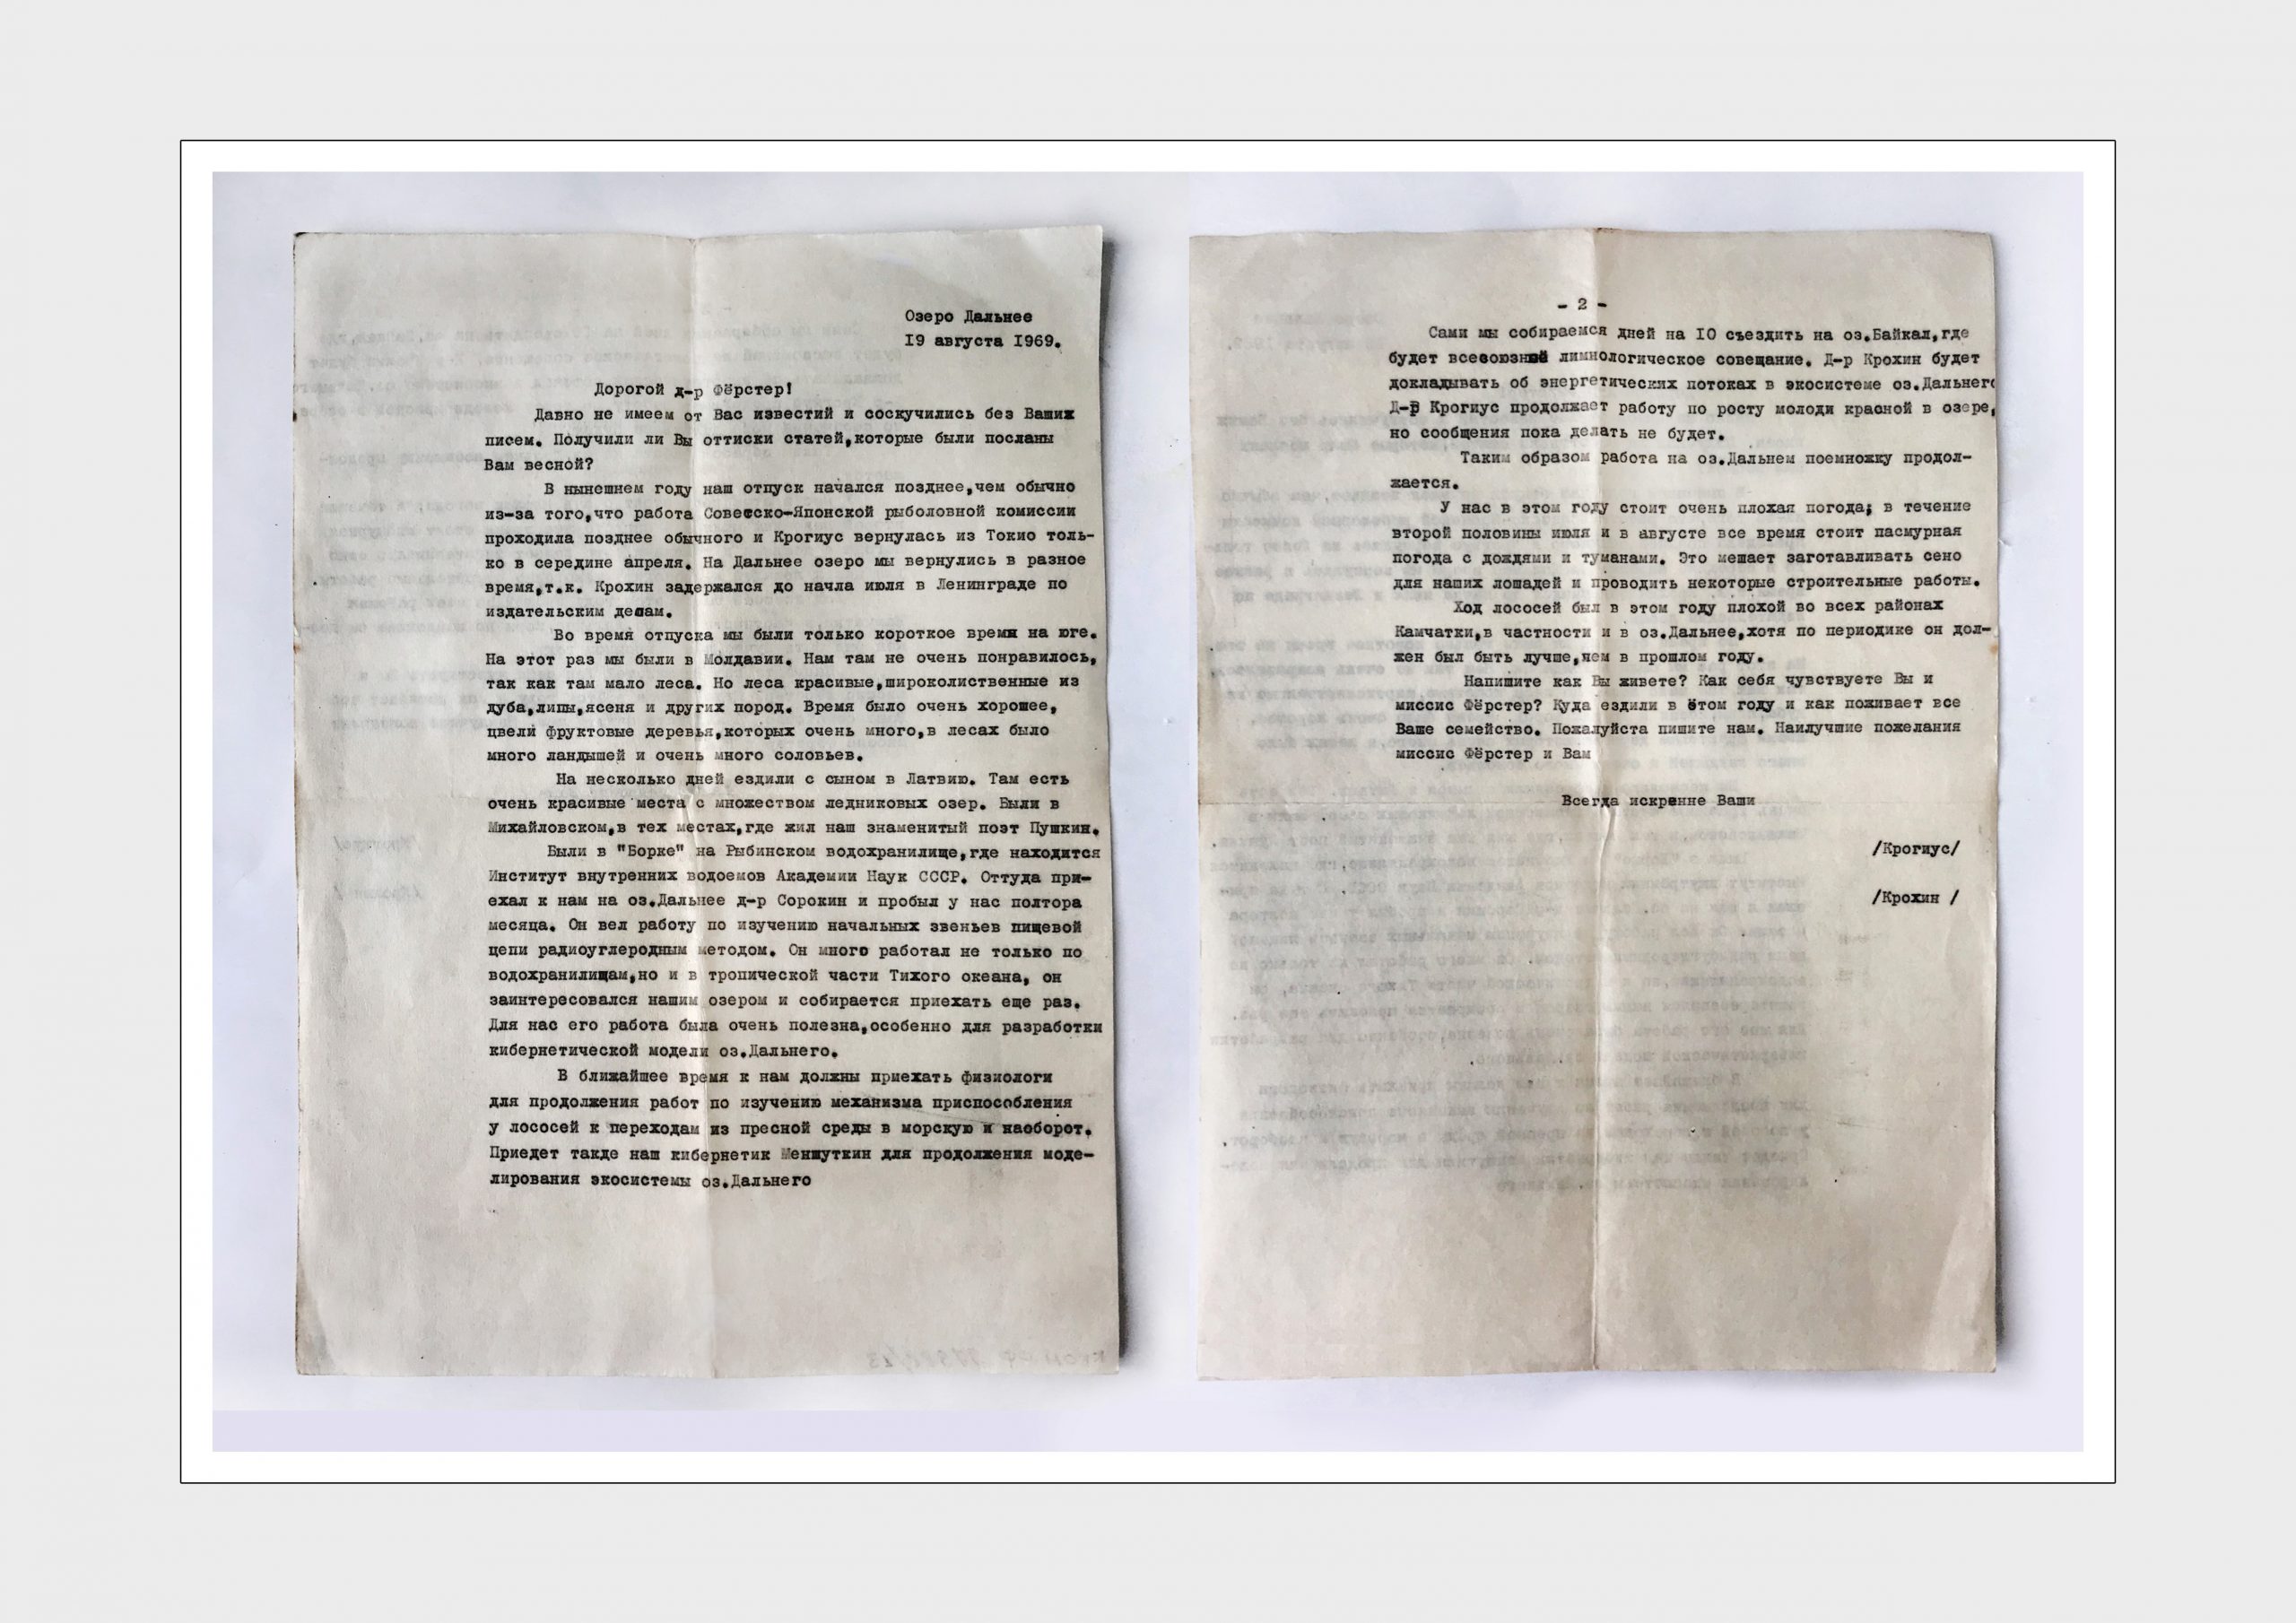 Письмо доктору Ферстеру от Крогиус Ф.В. 
 и Крохина Е.М.
Бумага, машинопись
Камчатка, озеро Дальнее
19 августа 1969 г.